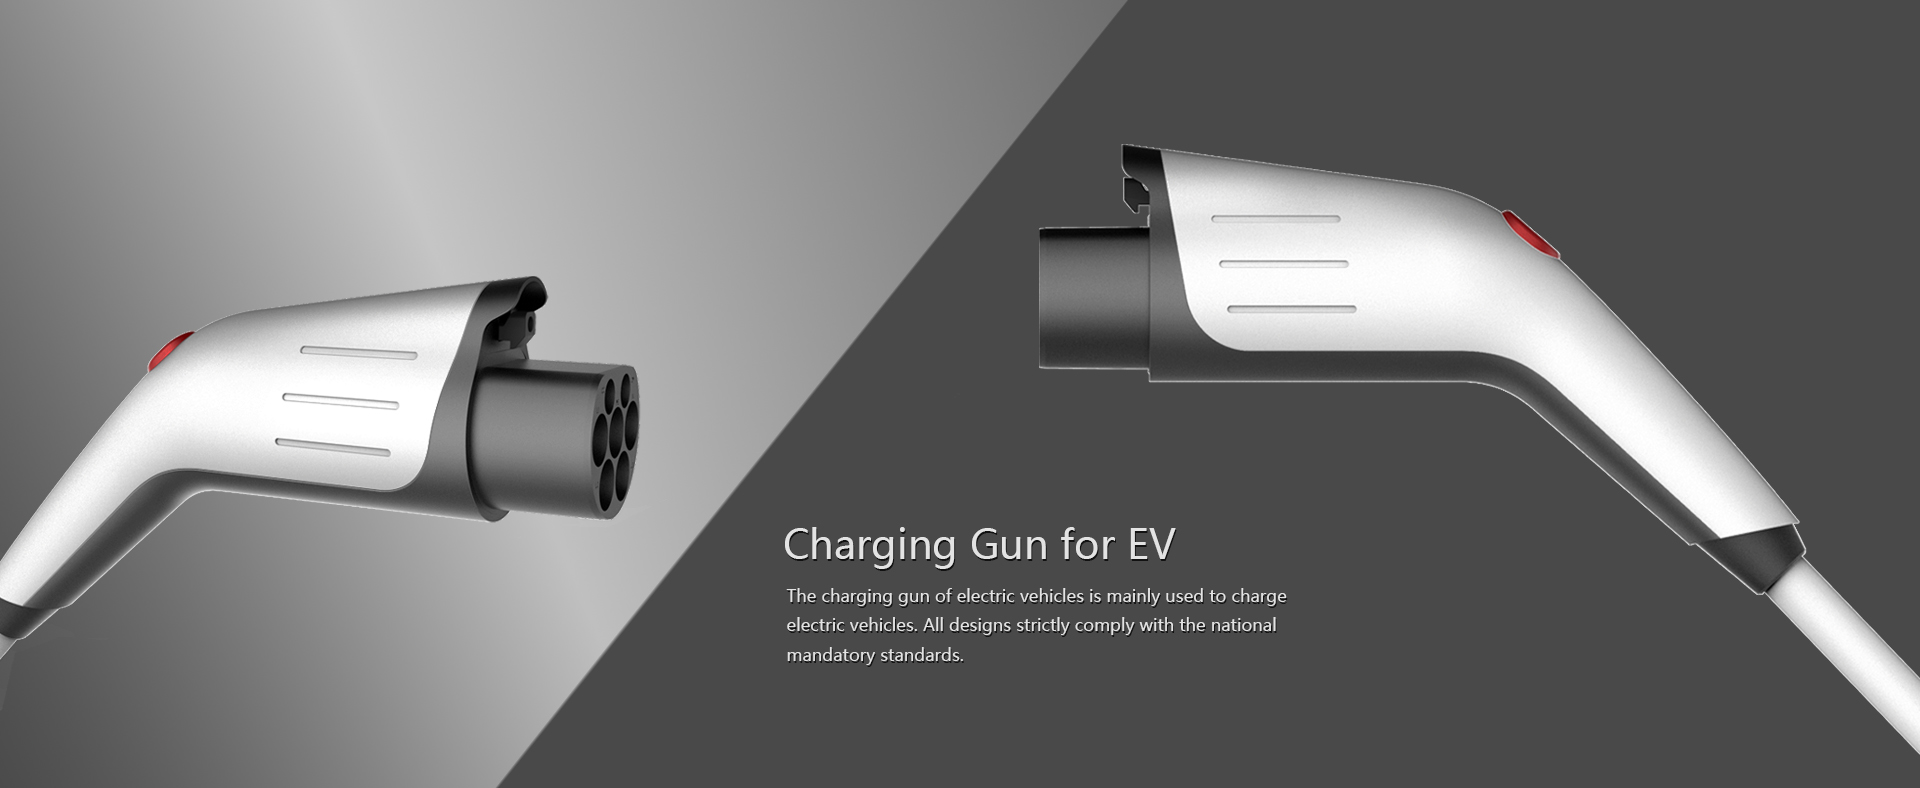 Ac Charging Gun 交流充电枪外形设计/充电枪外观设计/充电枪结构设计